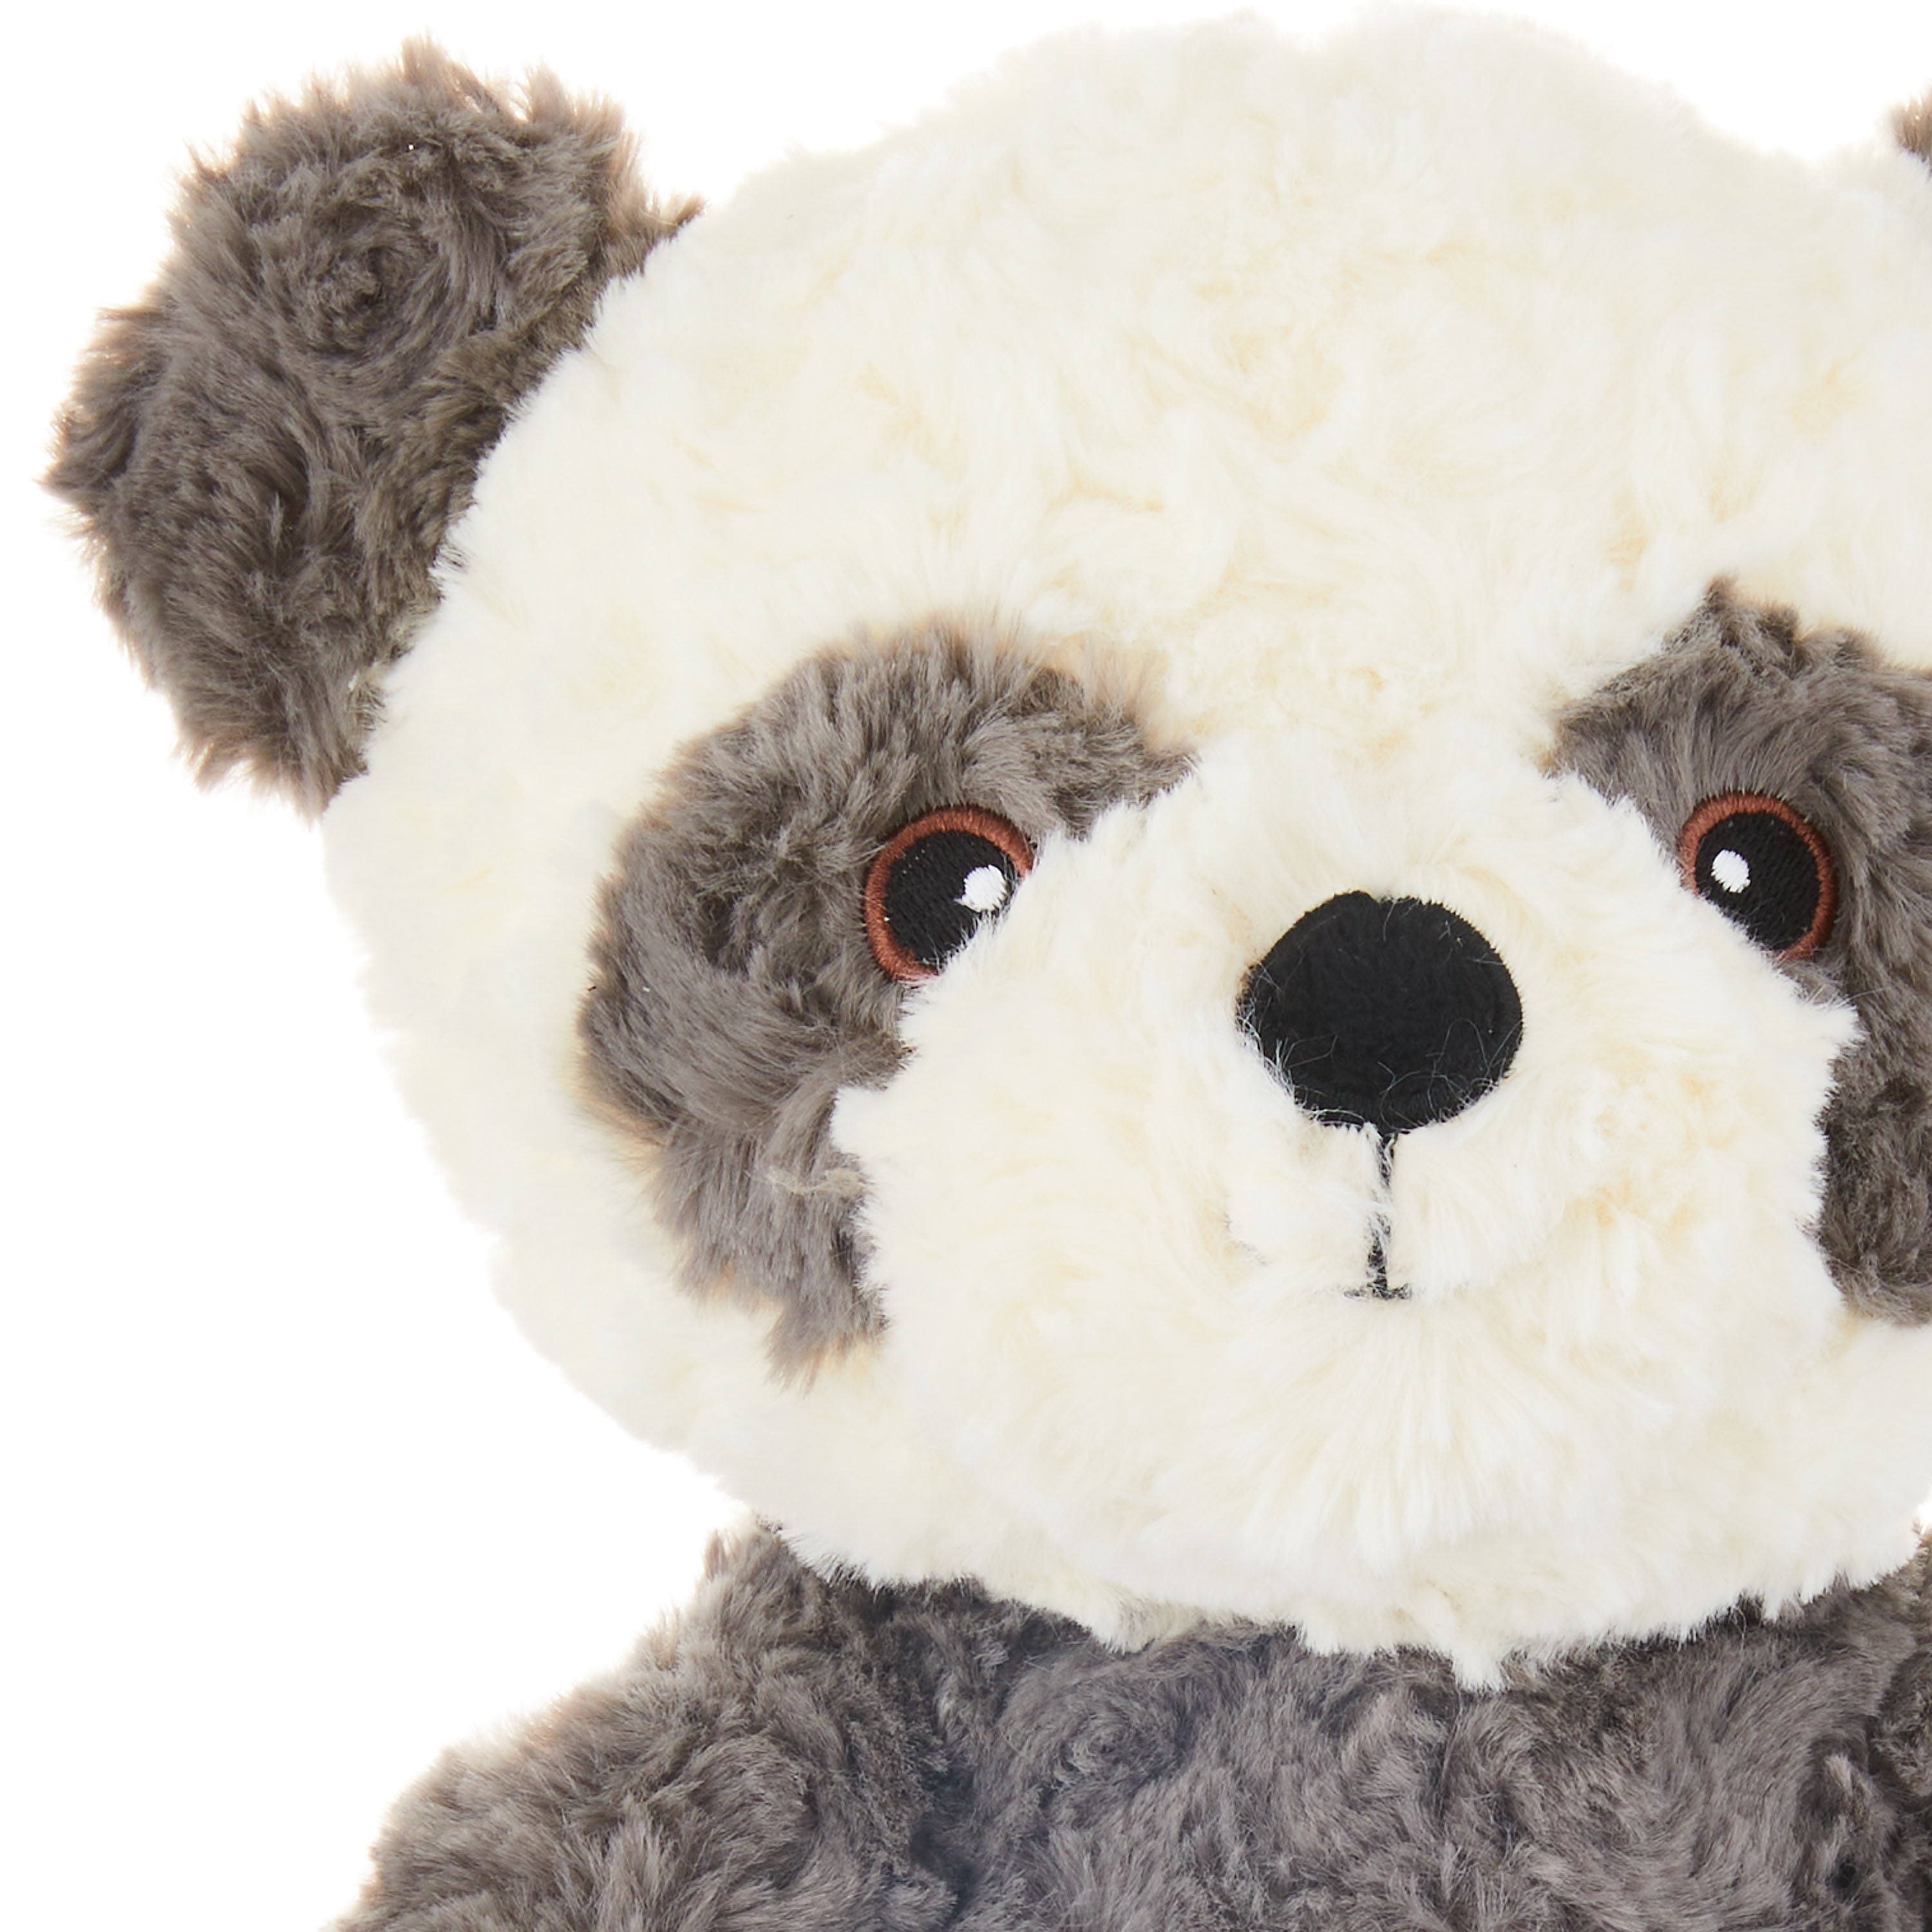 Doudou et Compagnie Dream Maker Panda Plush